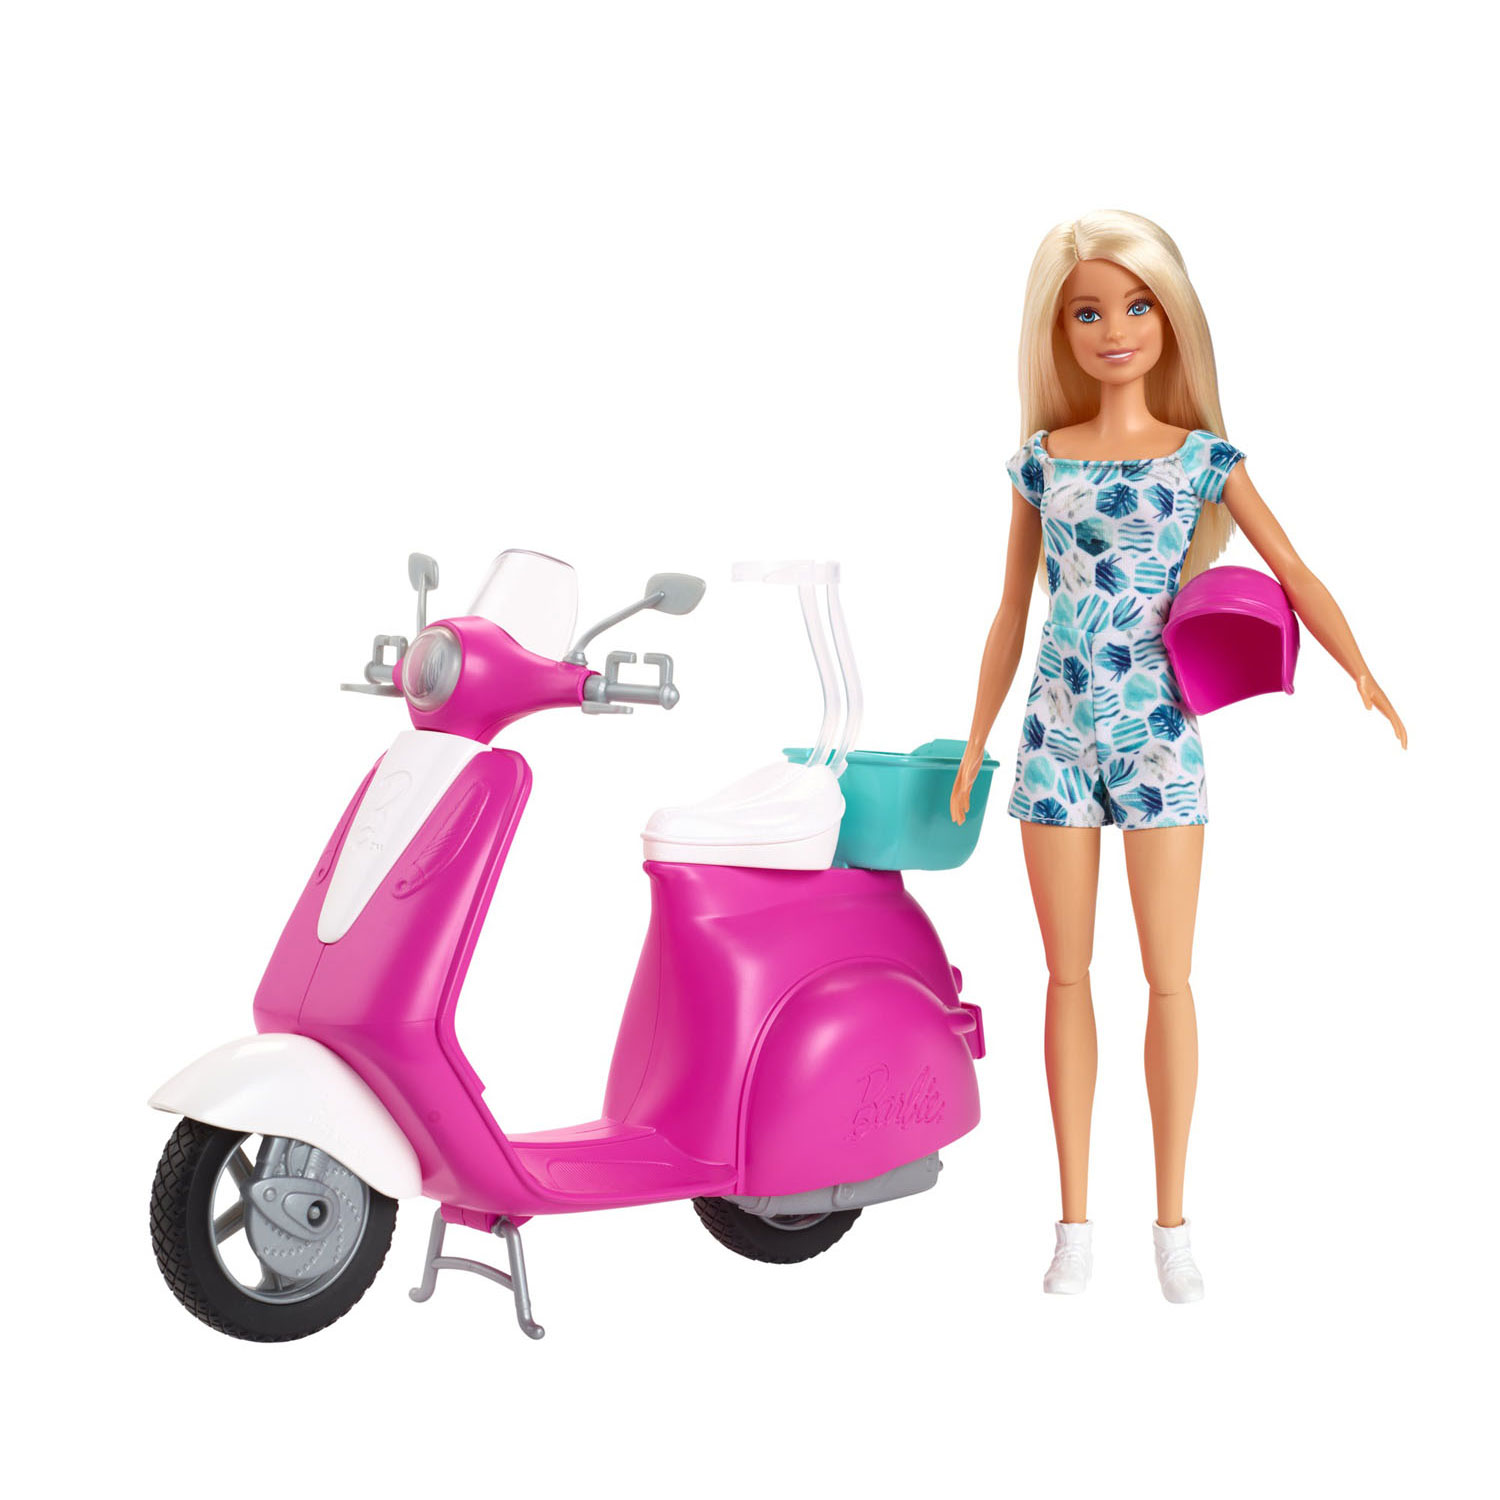 Barbie -Puppe mit Roller